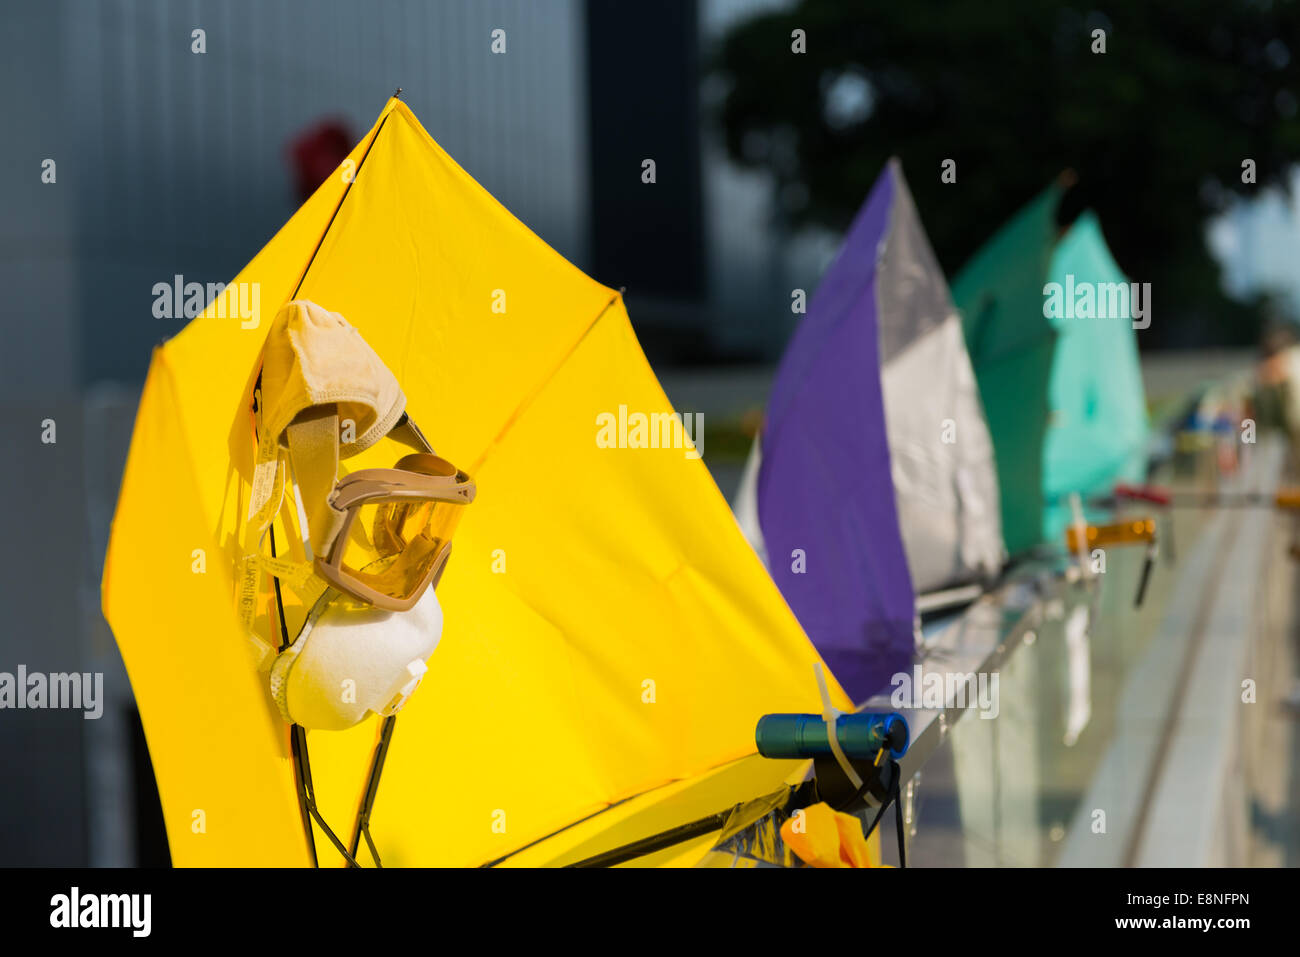 Hong Kong. El 12 de octubre de 2014. El 12 de octubre de 2014, Hong Kong protestas parasoles amarillos se han convertido en el símbolo de las protestas y de Hong Kong se encuentran en todo el Almirantazgo están incluidos en frente de las oficinas del gobierno en Tamar Admiralty. Estudiantes, activistas pro democracia y otros partidarios de ocupar el centro, que ahora se llama el paraguas paraguas de movimiento o de la revolución, se han tomado las calles en la zona ahora llamada Plaza de paraguas. Foto de stock